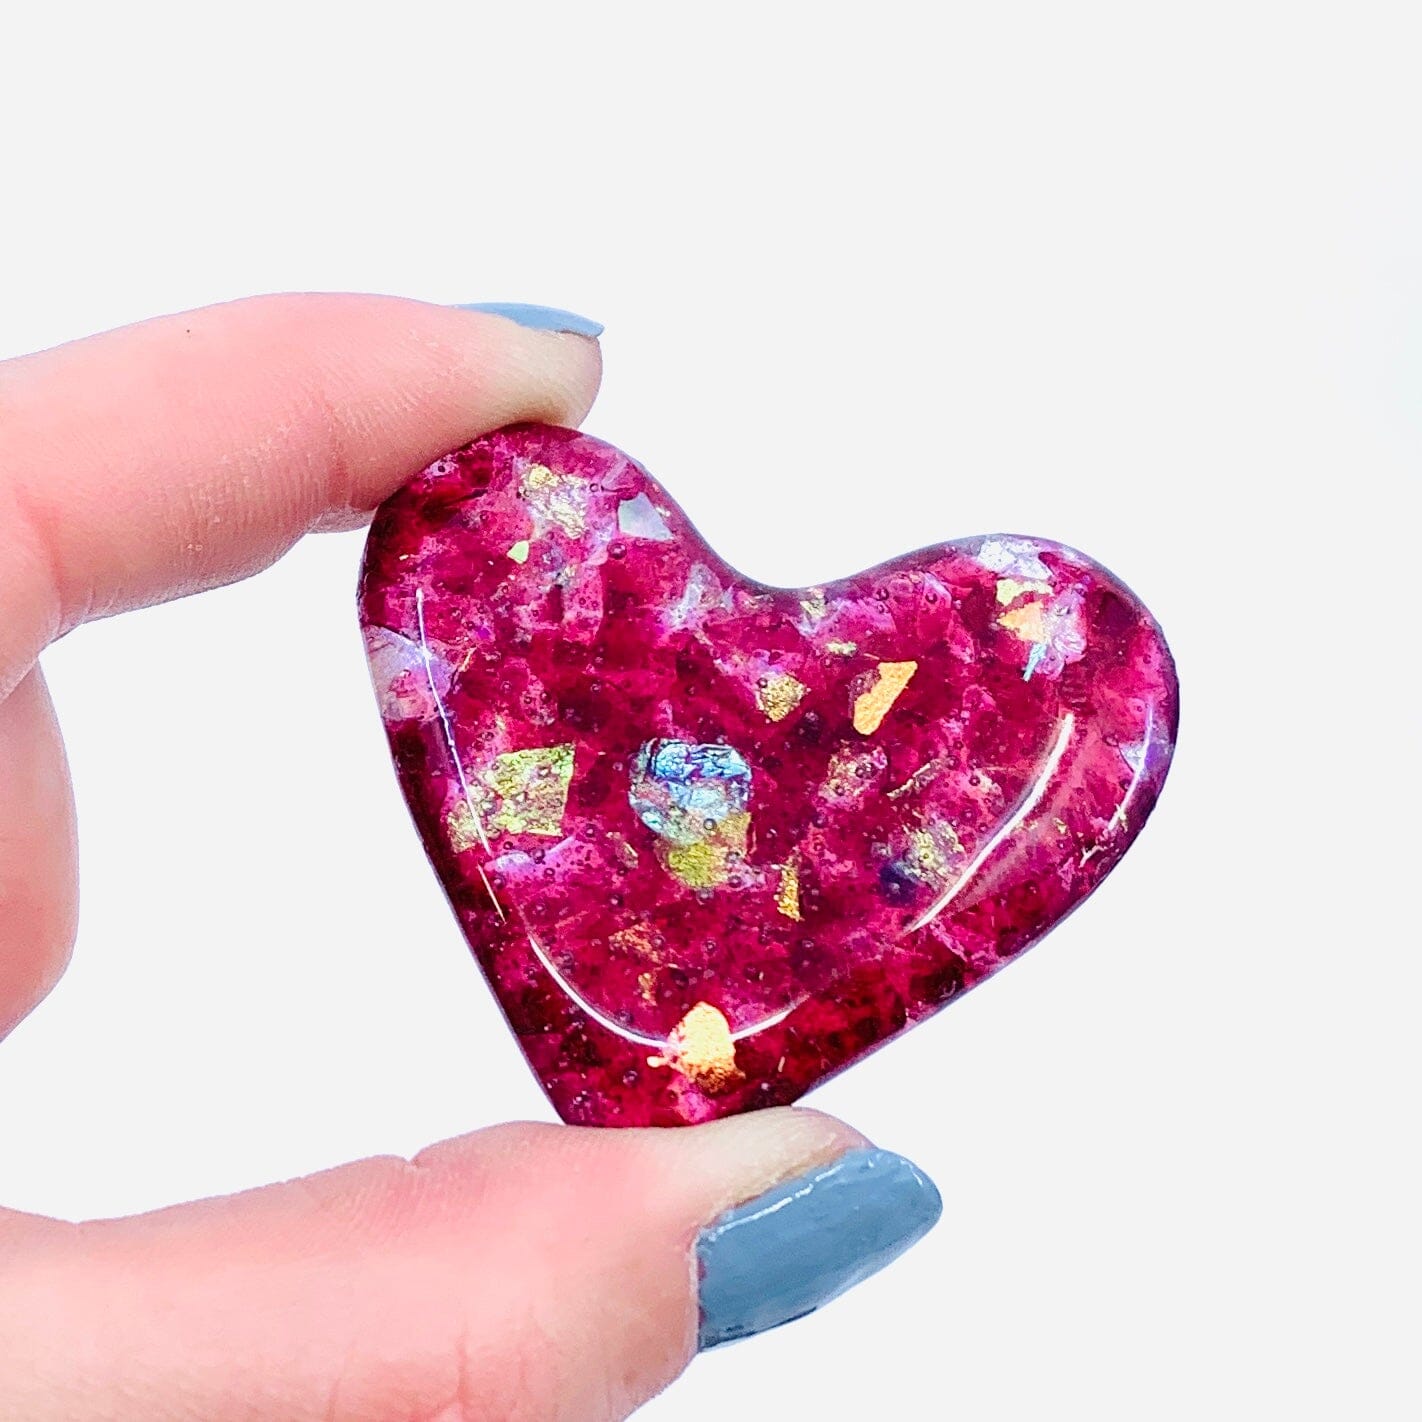 Fused Pocket Heart, Ltd Edition Pink Glitter Miniature Jean 